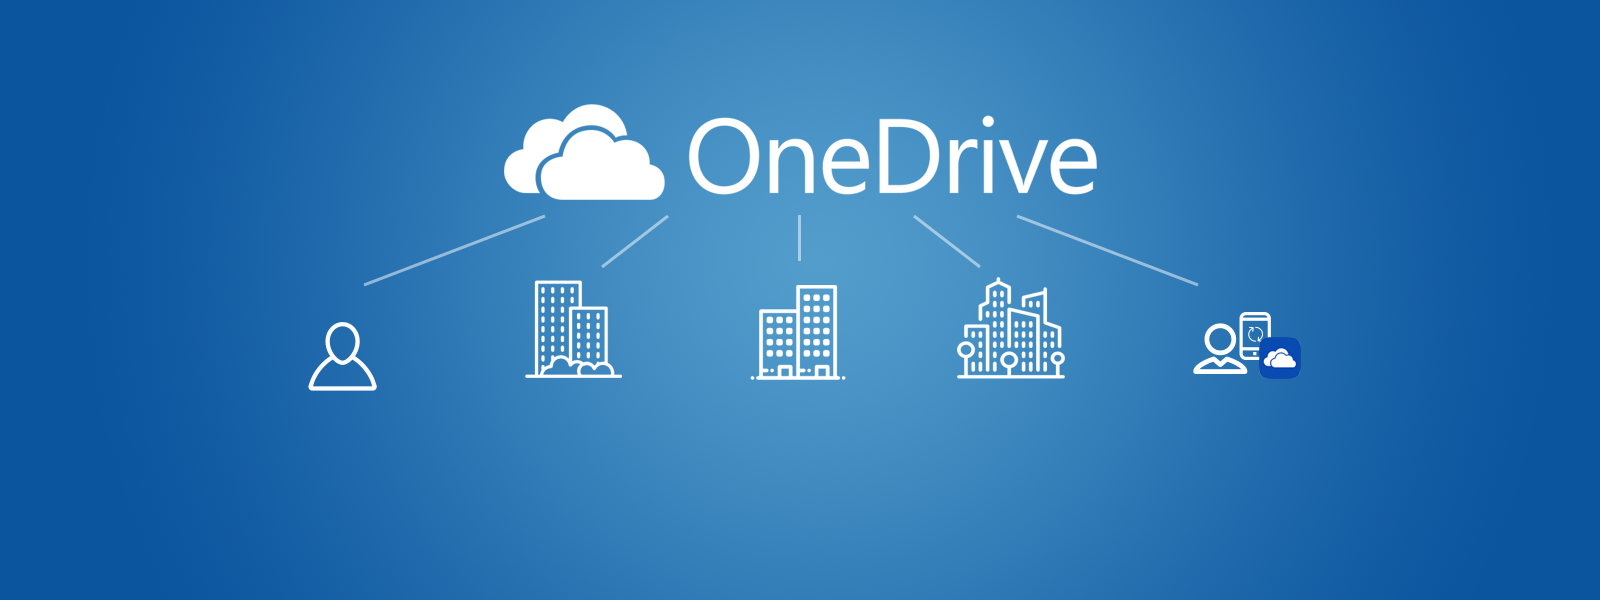 كيفية إخفاء تطبيق OneDrive من مستكشف الملفات في ويندوز 10